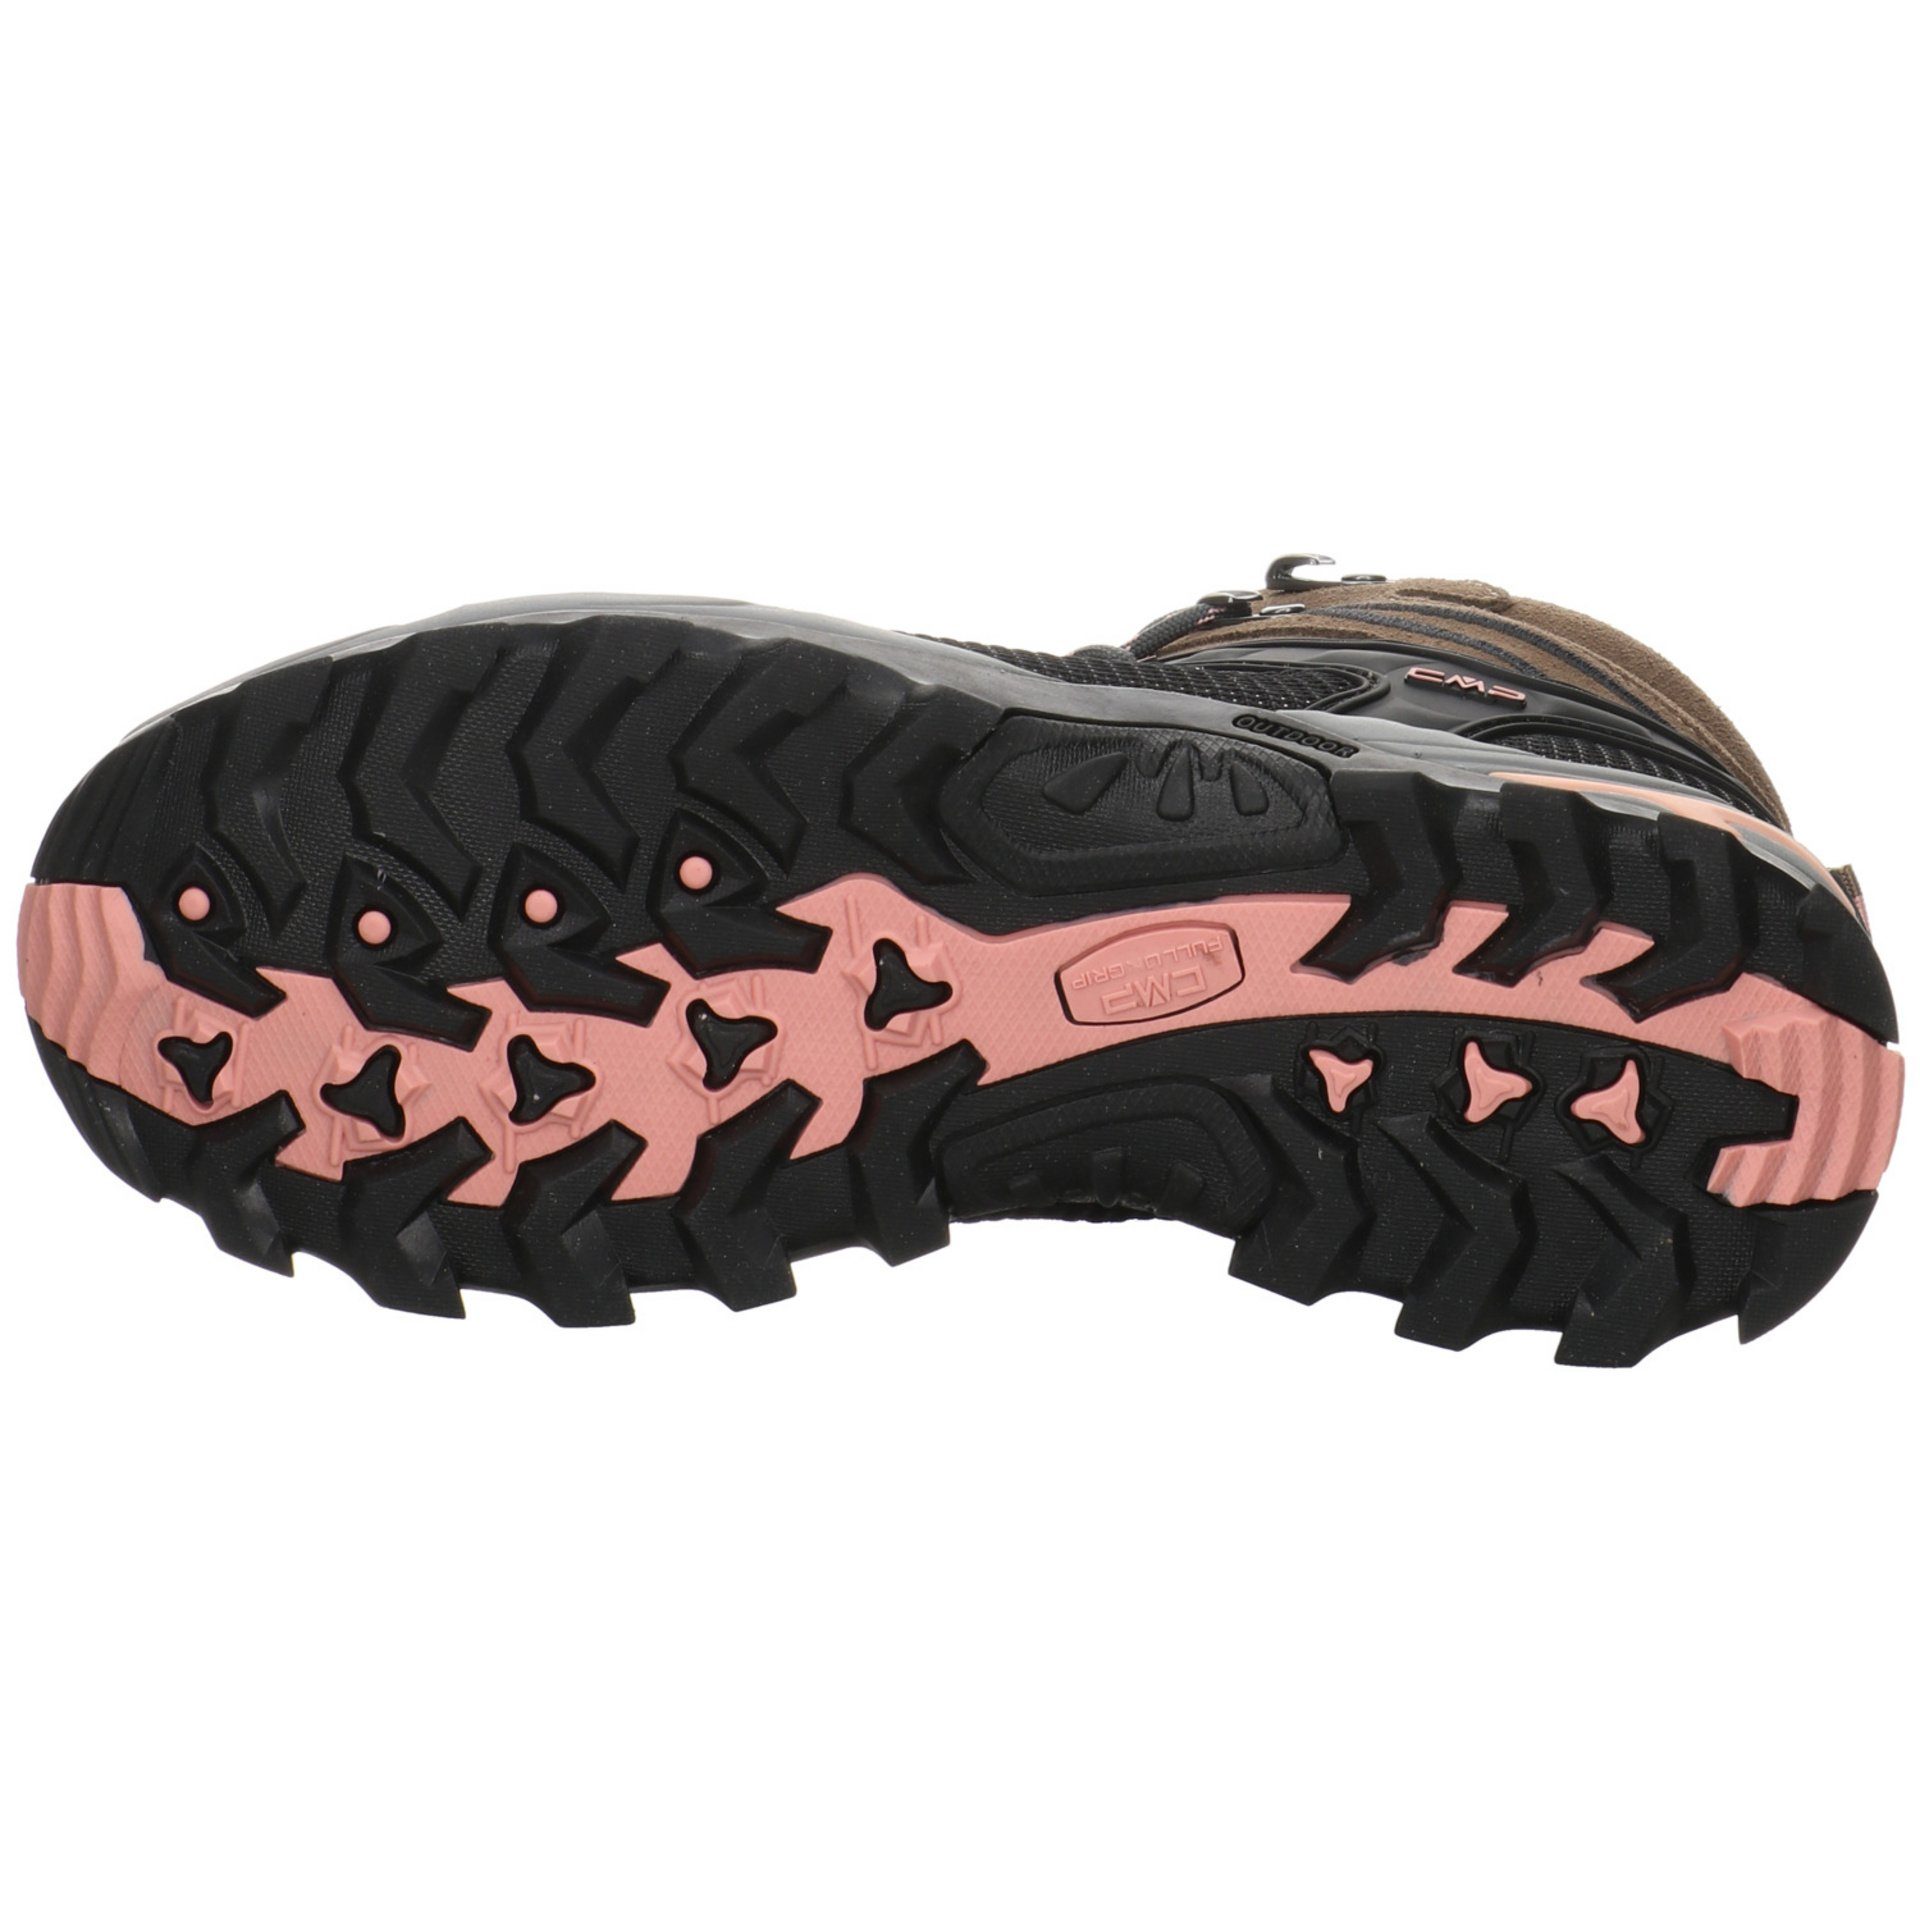 Mid Outdoor Rigel Damen Outdoorschuh Outdoorschuh CMP Leder-/Textilkombination CENERE Schuhe